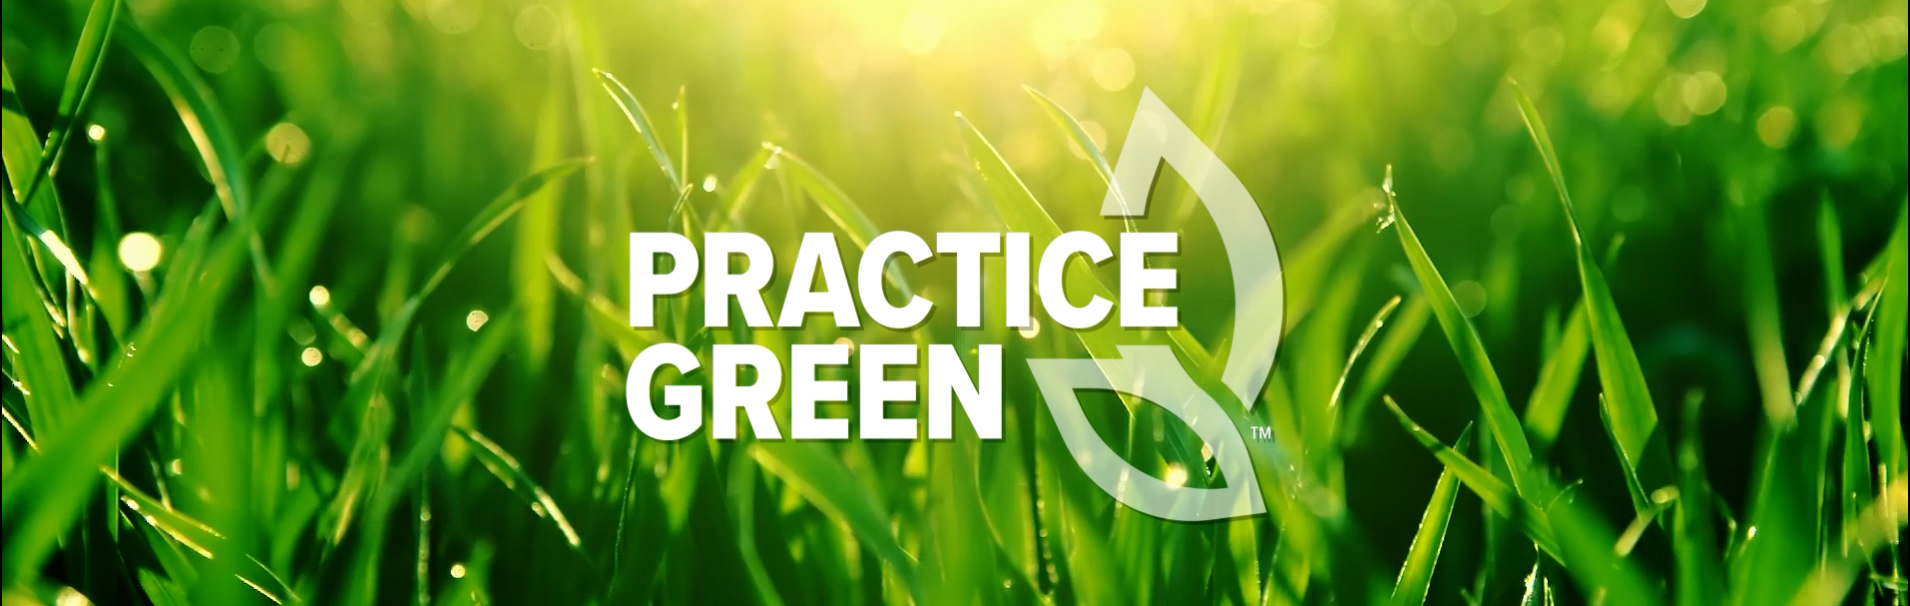 Practice Green Video